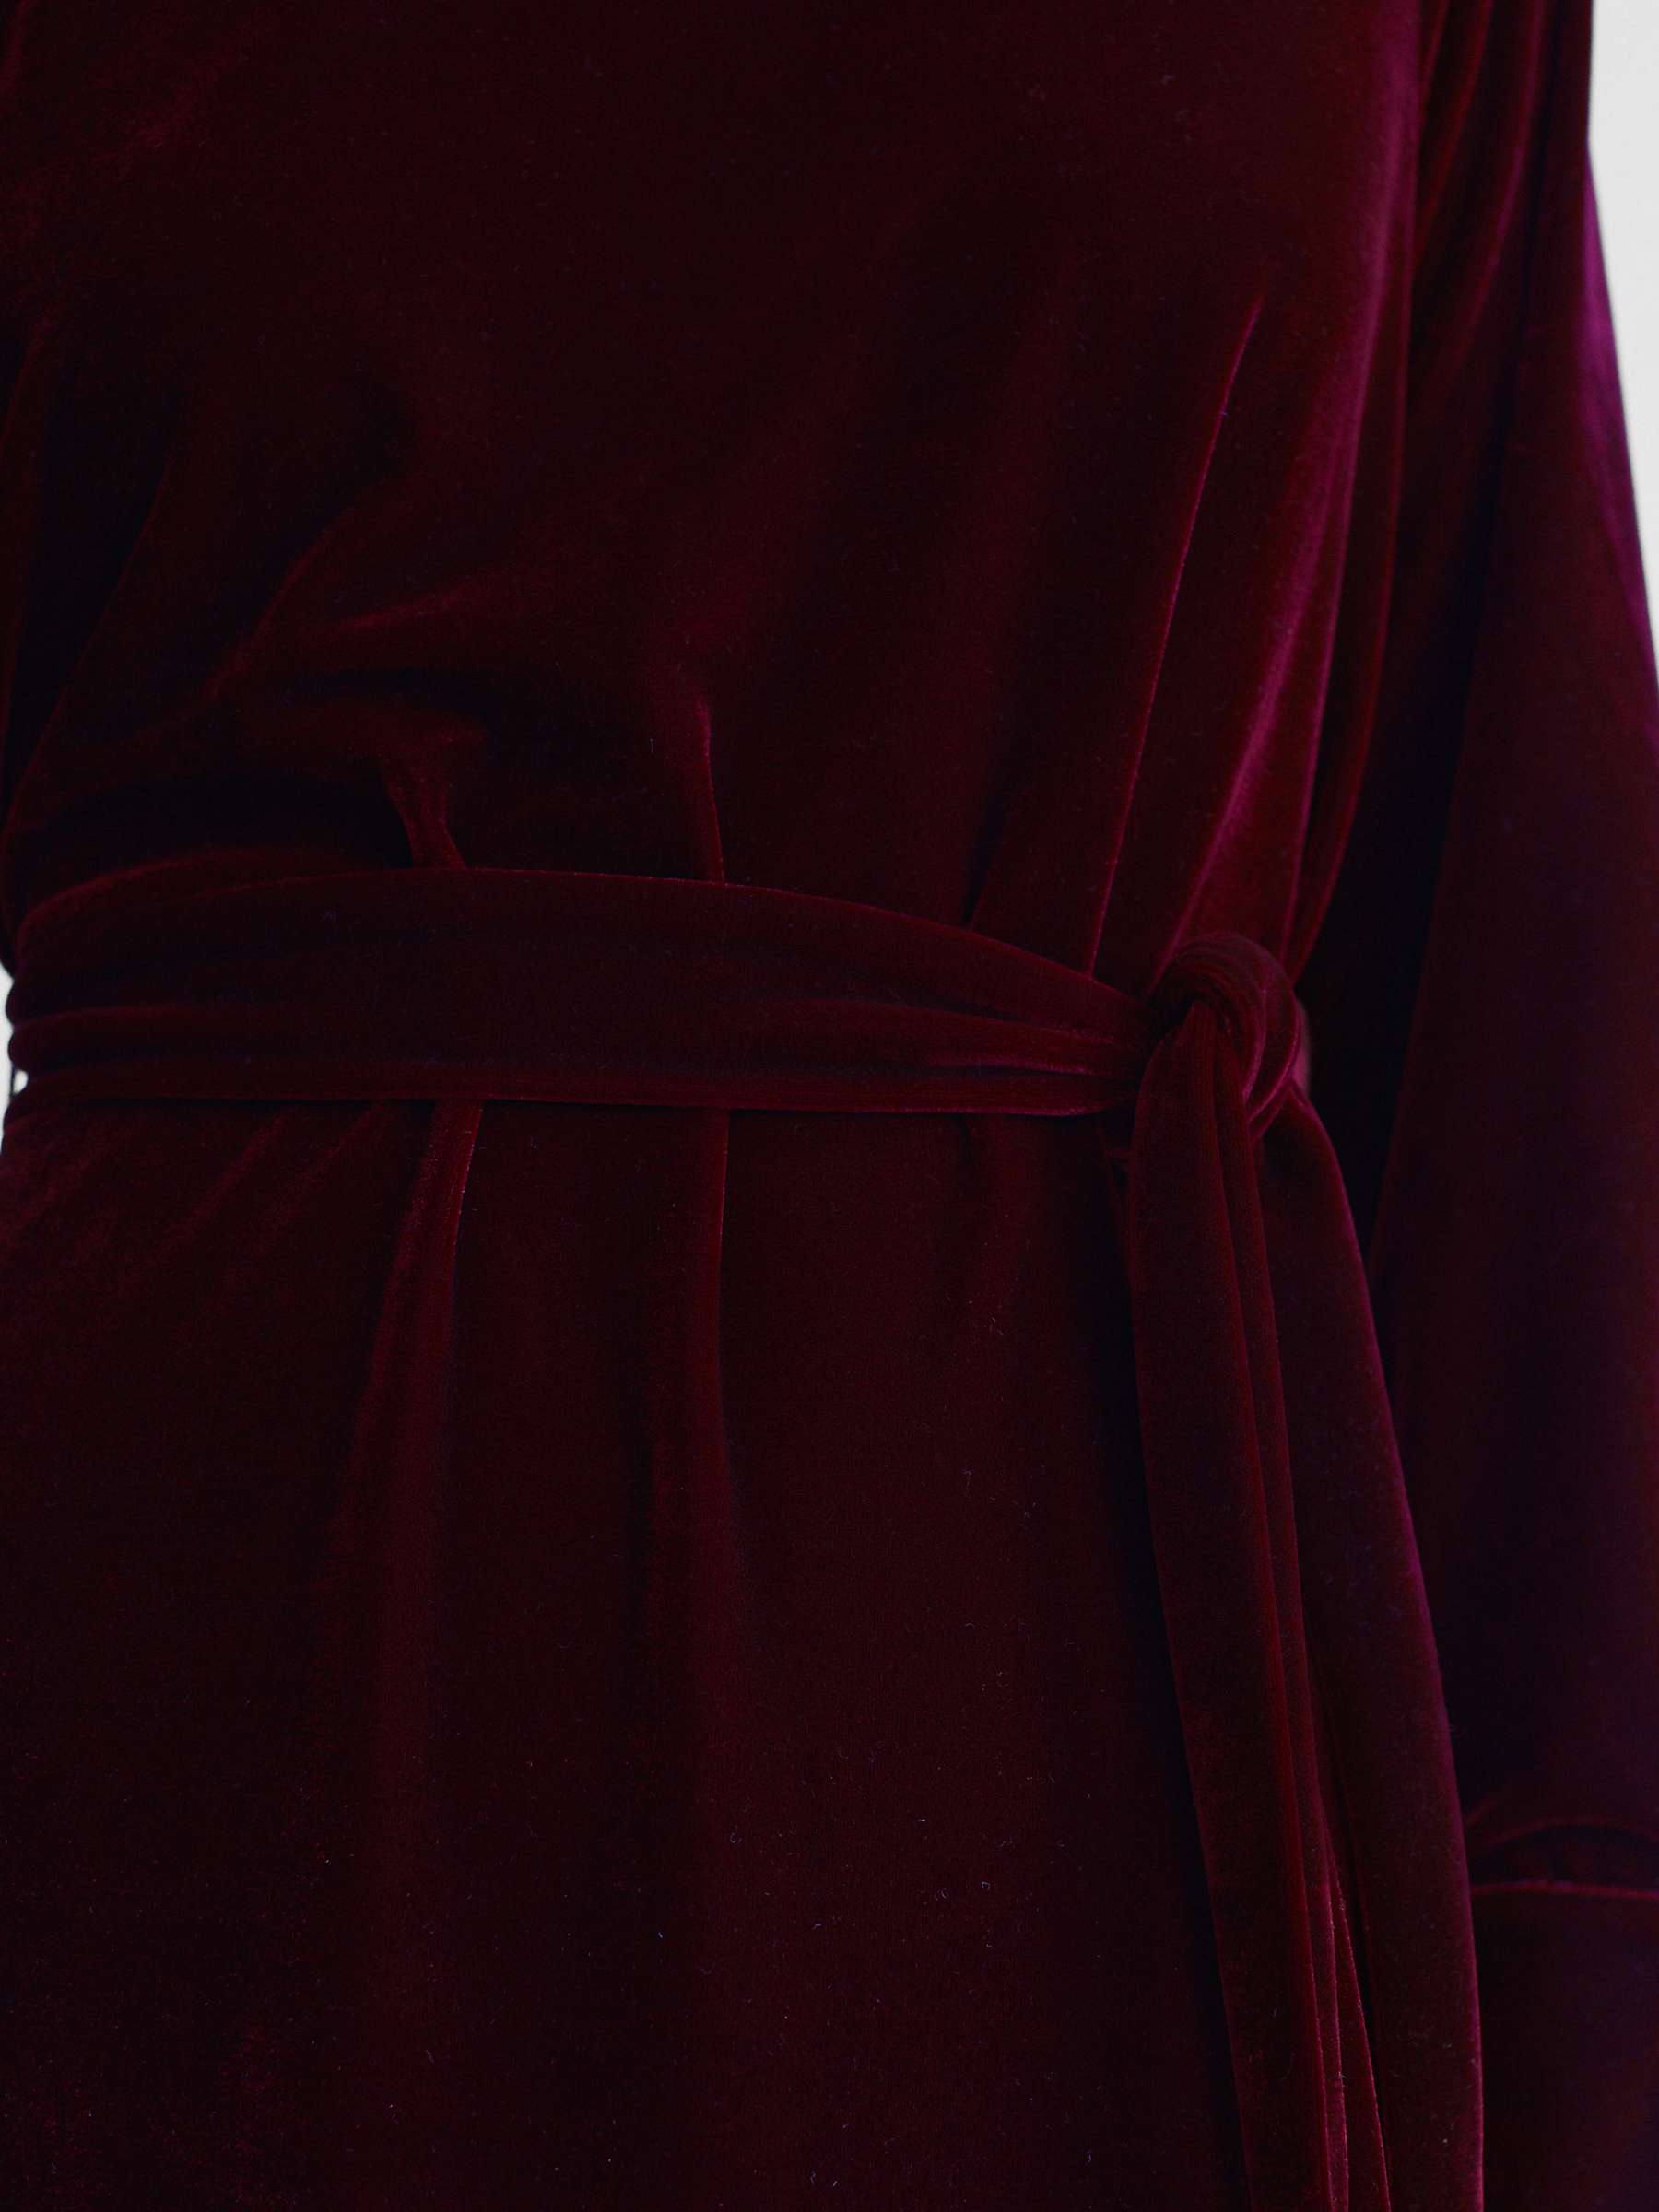 Buy Reiss Essie High Neck Velvet Mini Dress, Berry Online at johnlewis.com